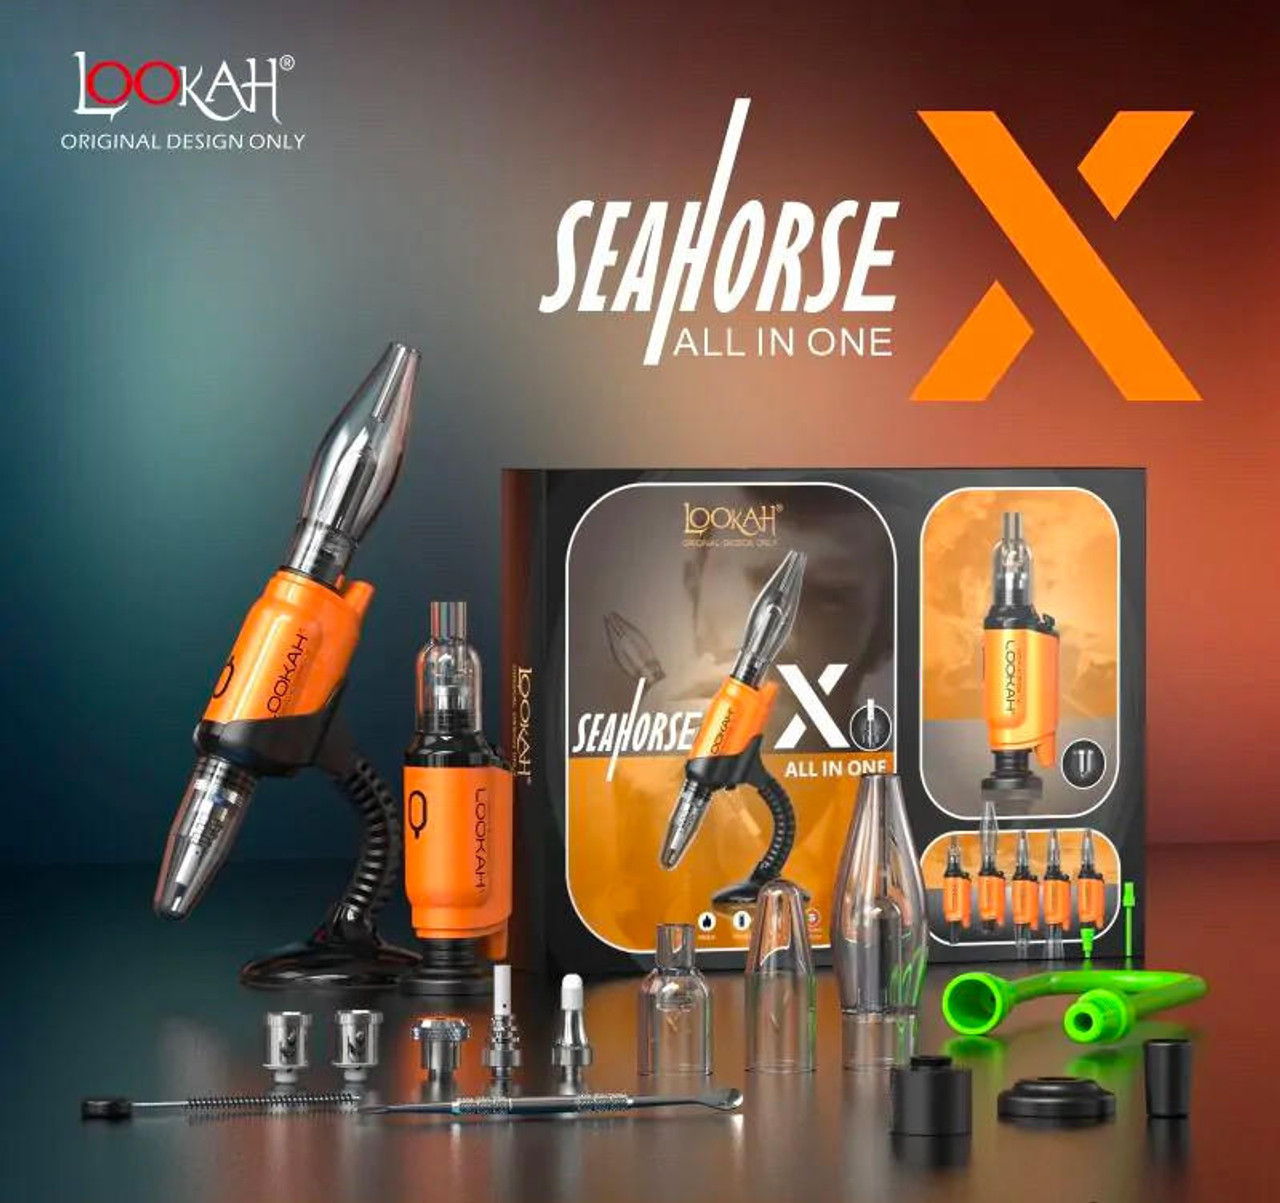 in X E-Nectar Pen, Seahorse Collector, and Lookah E-Nail Wax Orange 3 1: Portable